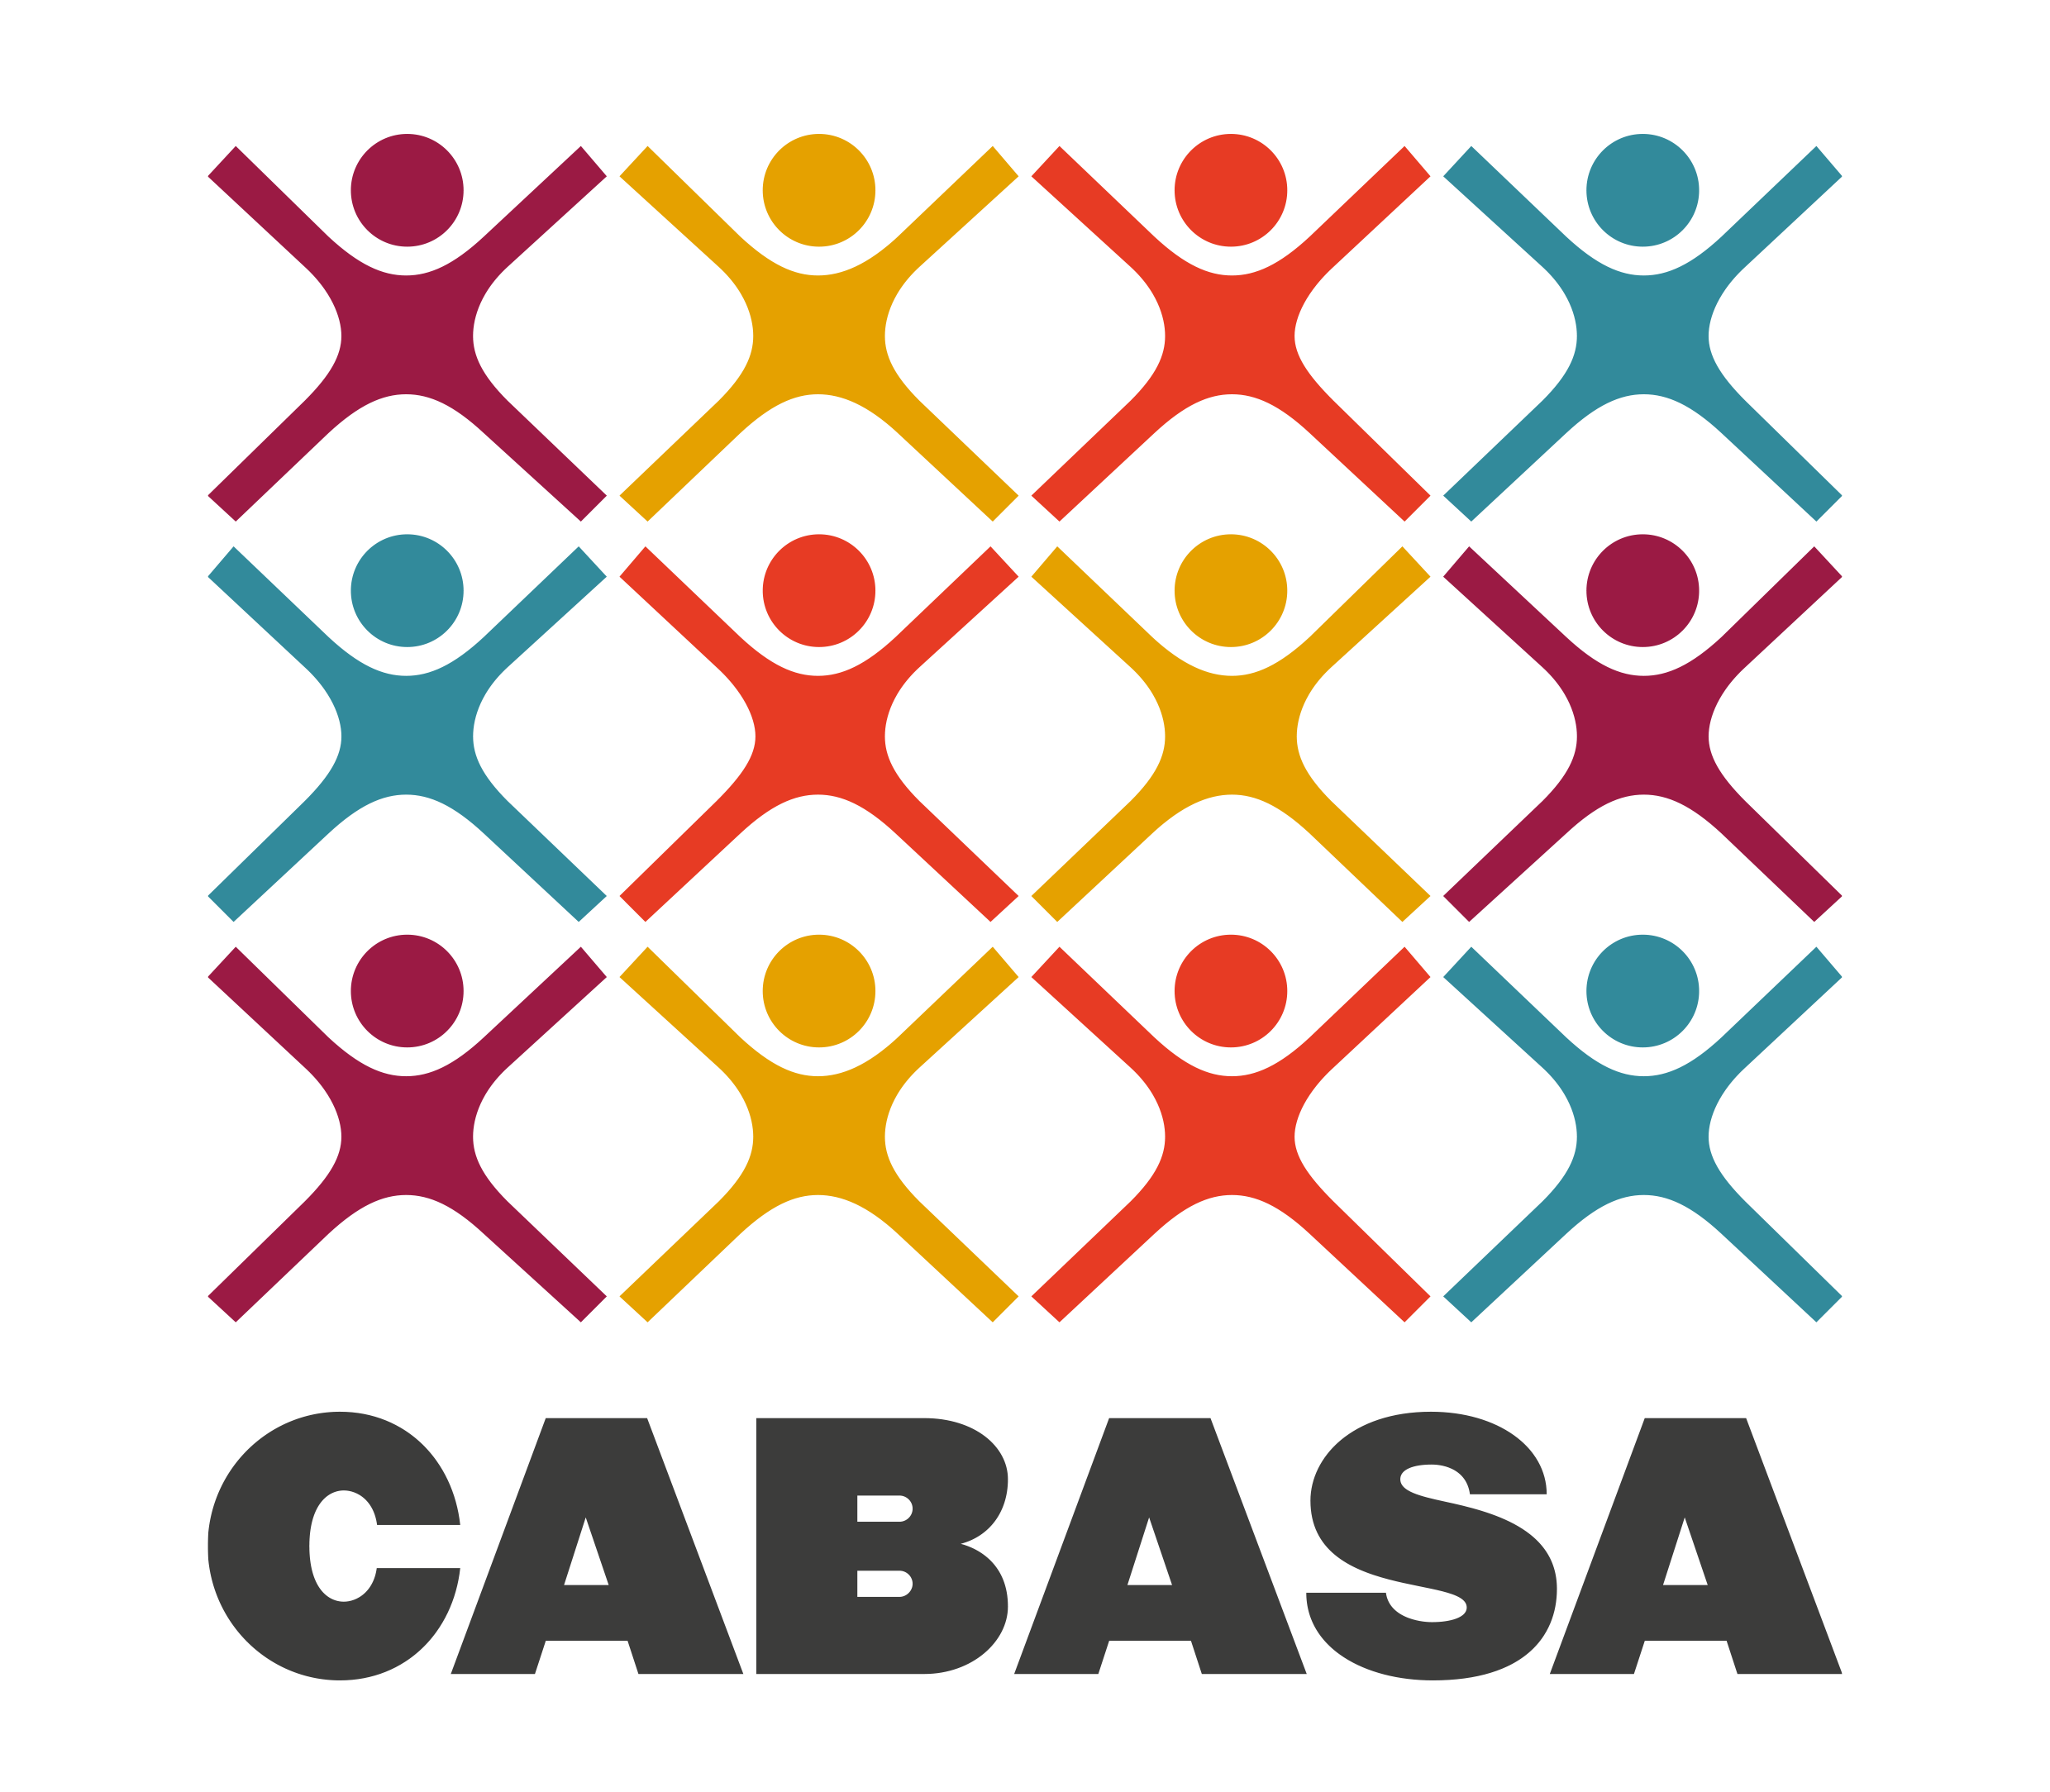 Cabasa Carnival Arts